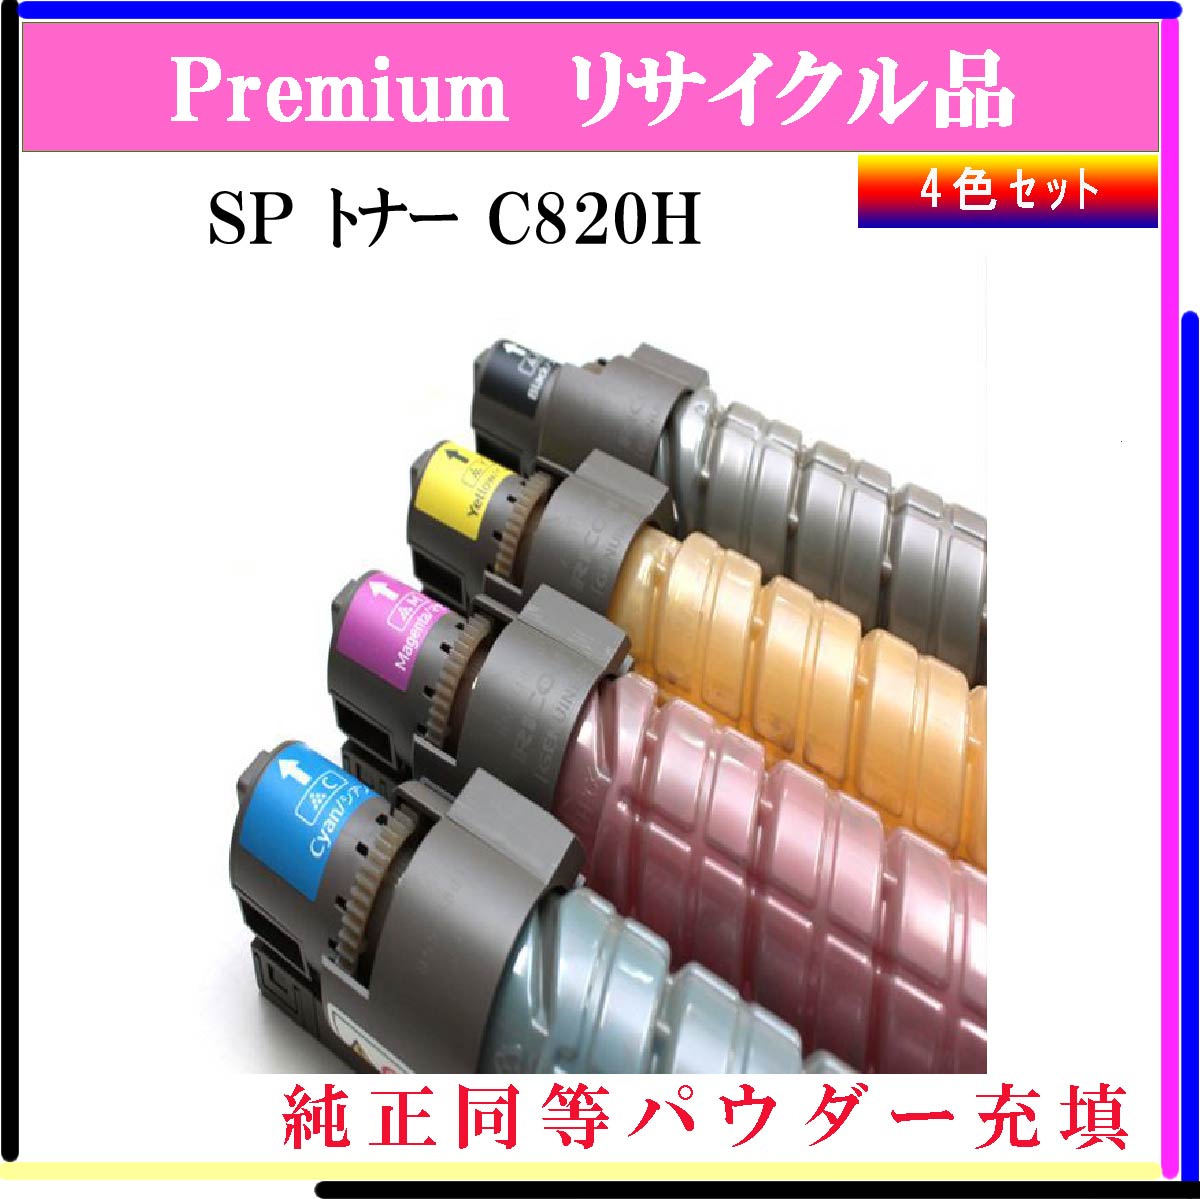 SP ﾄﾅｰ C820H (4色ｾｯﾄ) (純正同等ﾊﾟｳﾀﾞｰ) - ウインドウを閉じる